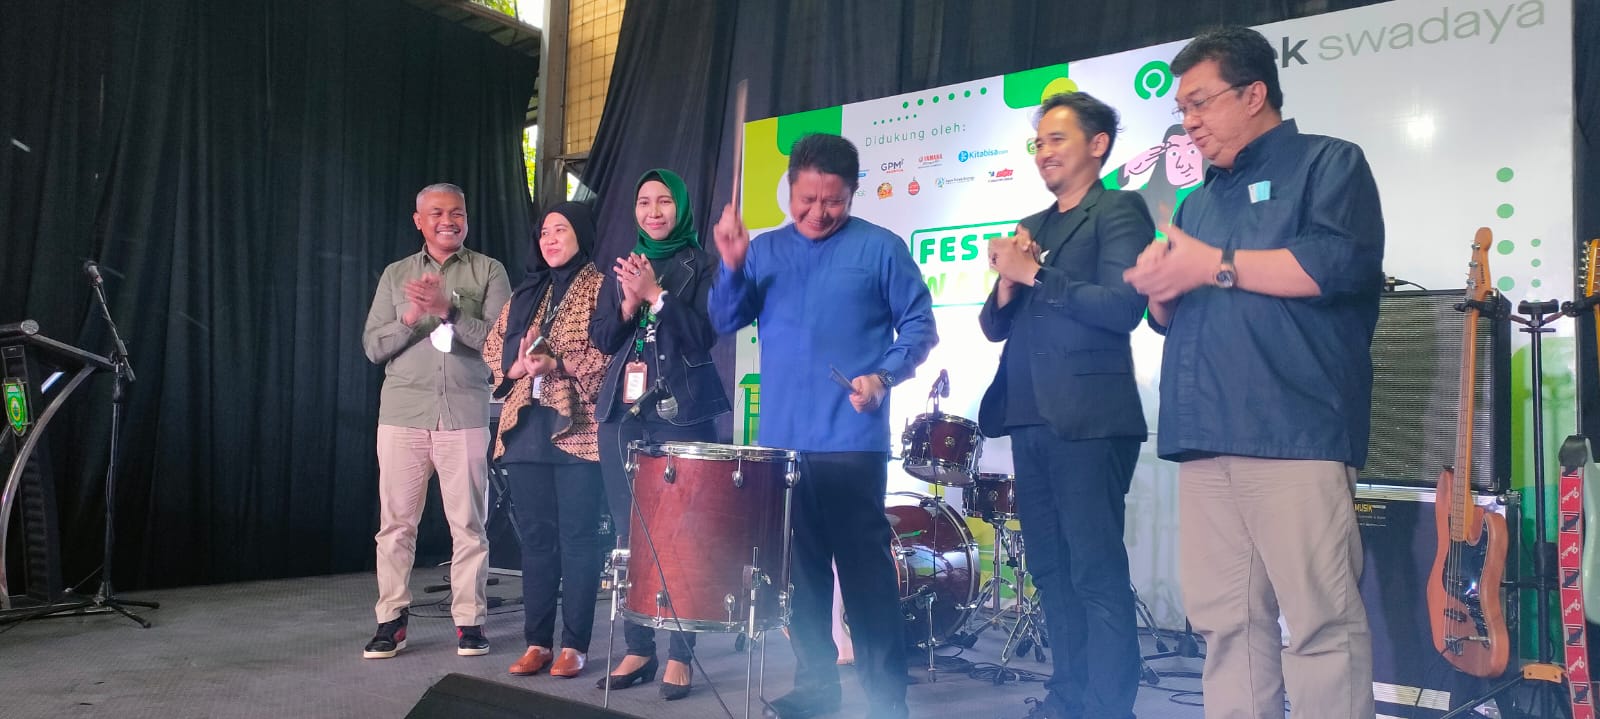 Festival Swadaya, Hiburan dan Apresia Bagi Mitra Driver Gojek Palembang